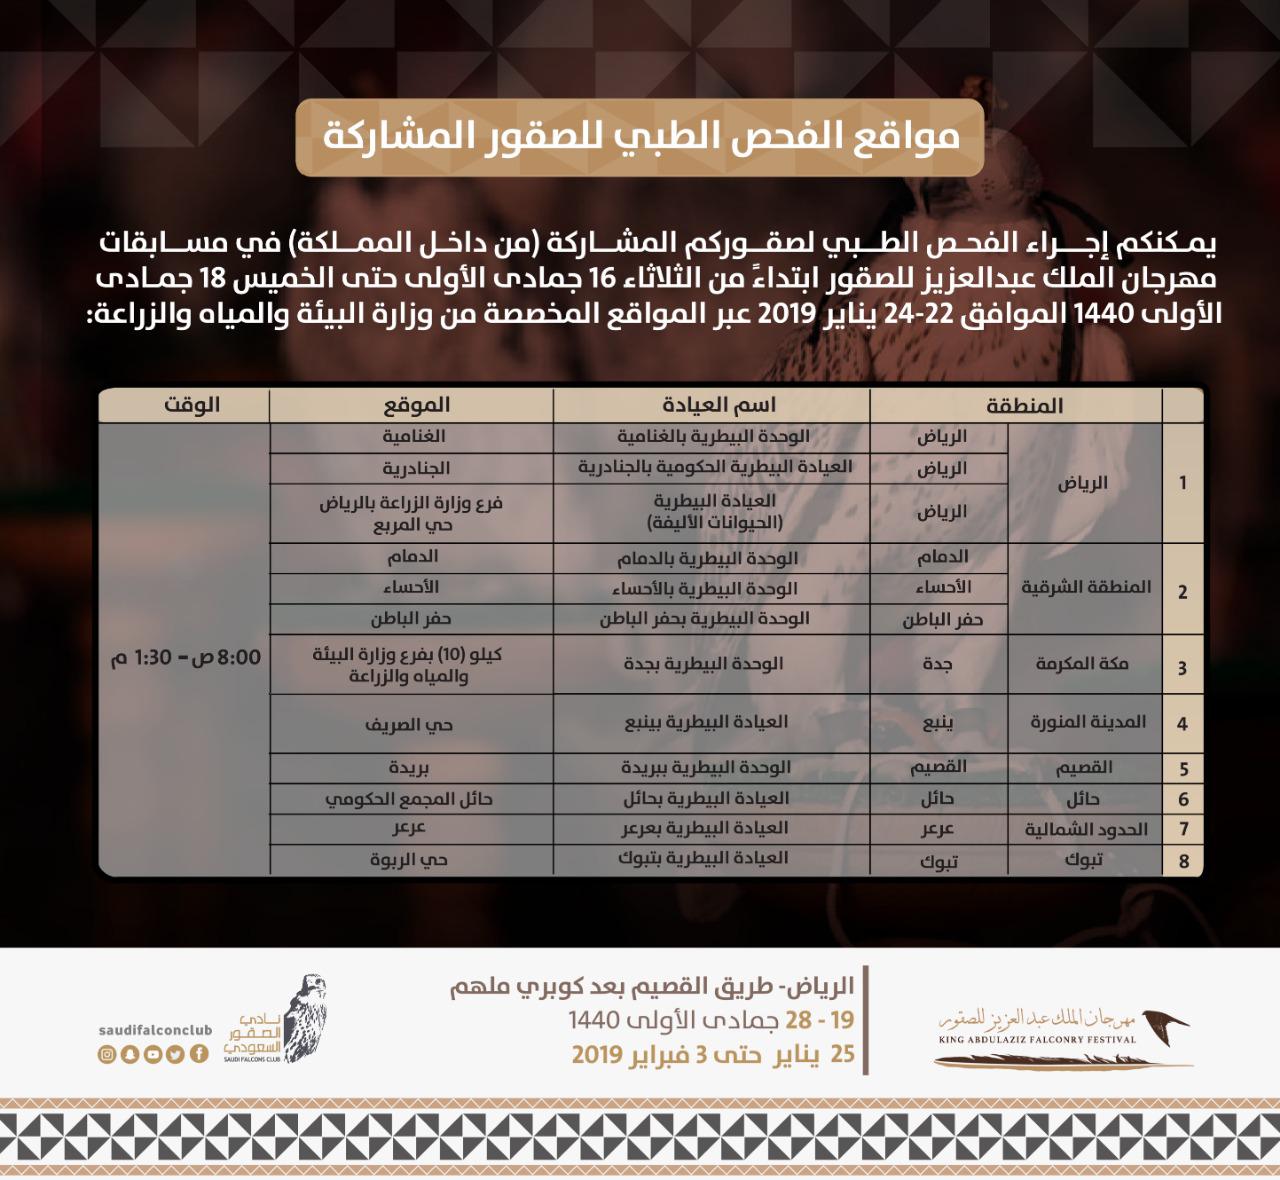 مهرجان الملك عبدالعزيز للصقور يدعو المشاركين لفحص صقورهم طبيًّا